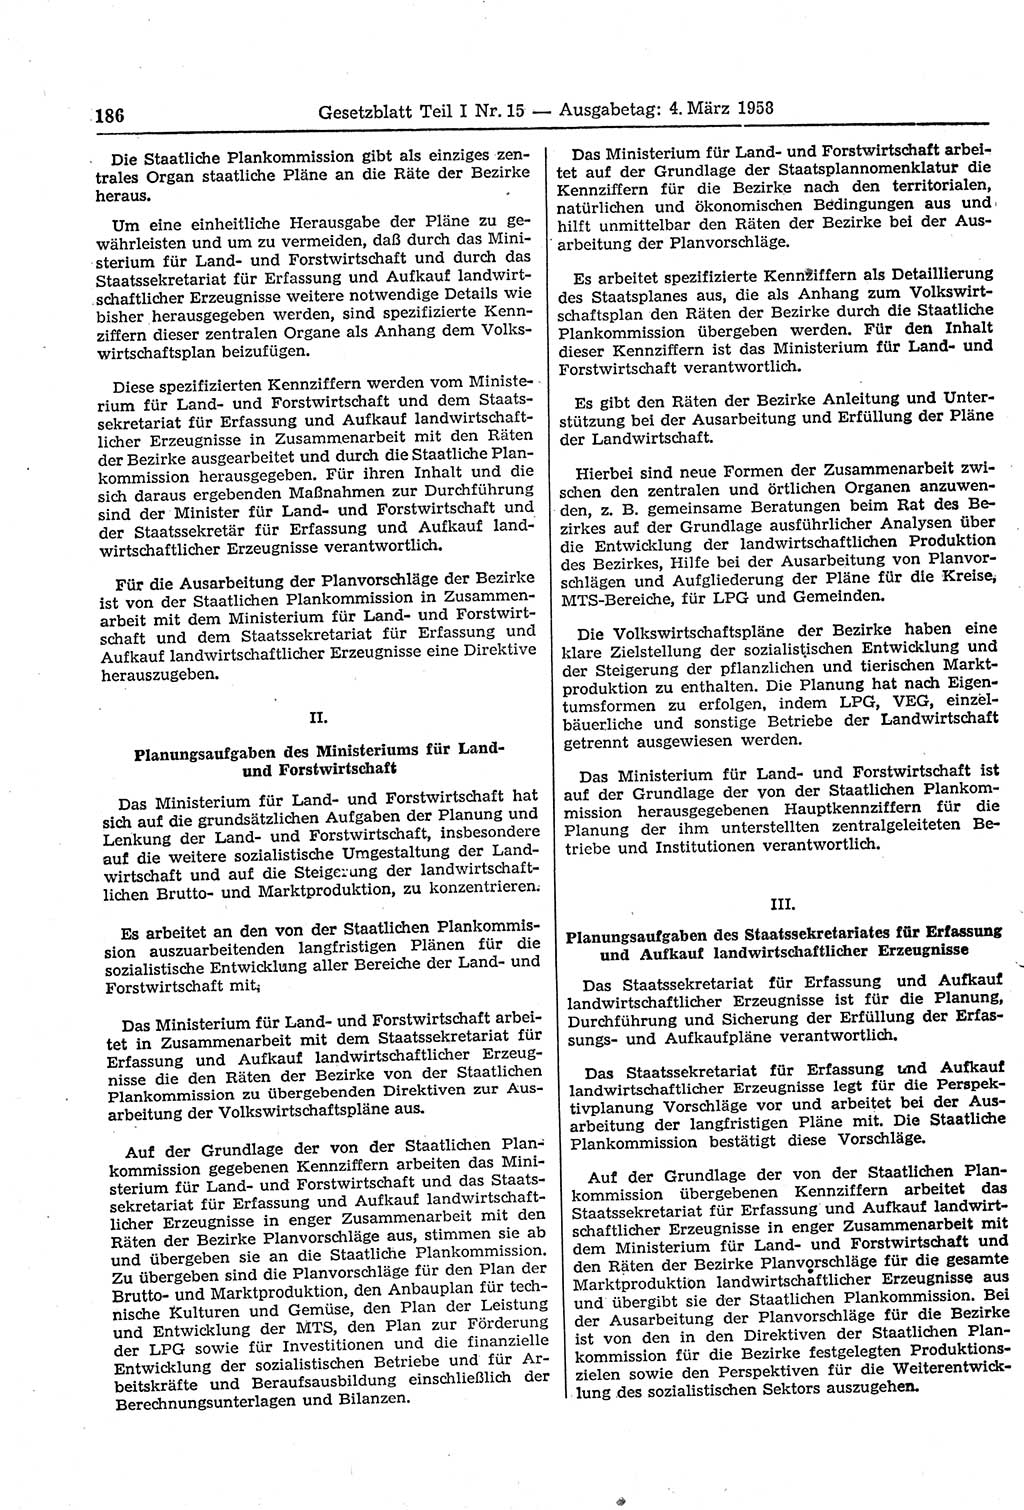 Gesetzblatt (GBl.) der Deutschen Demokratischen Republik (DDR) Teil Ⅰ 1958, Seite 186 (GBl. DDR Ⅰ 1958, S. 186)